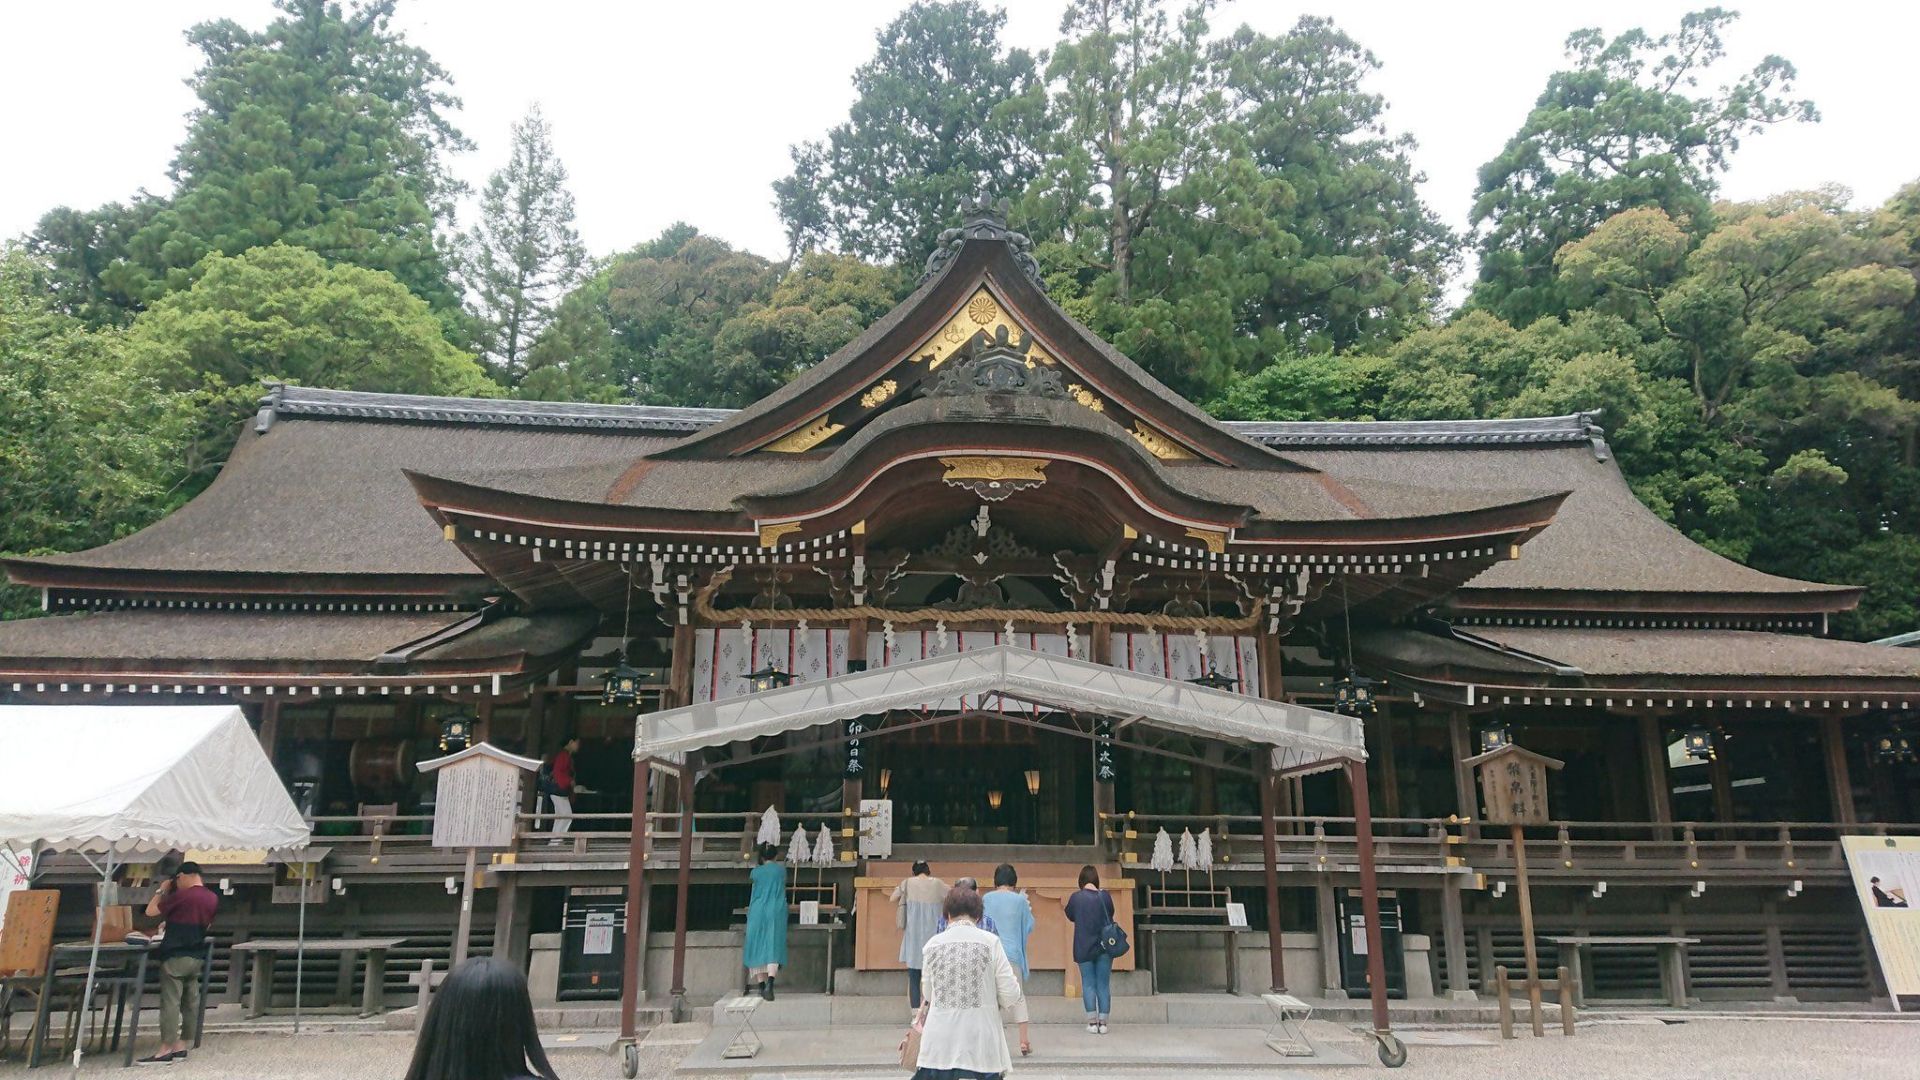 大神神社 大神神社是日本最古老的神社之一，祭祀大物主大神以三轮山为神体（神体山）所成立的神社，至今仍